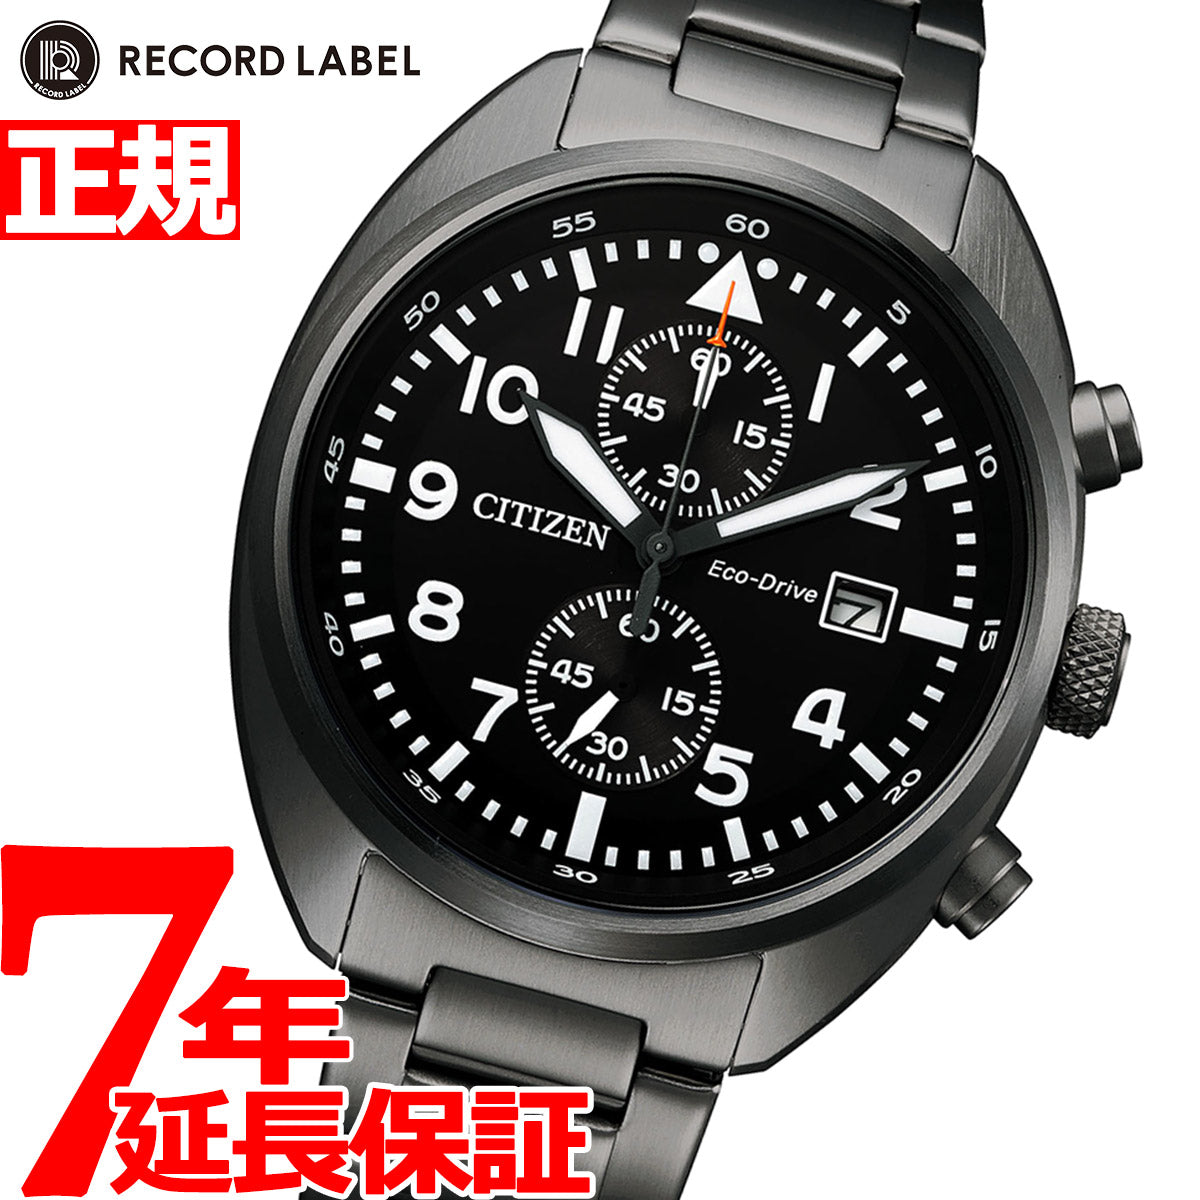 秒針停止機能未使用 シチズン レコードレーベル エコドライブ 腕時計 CA7047-86E